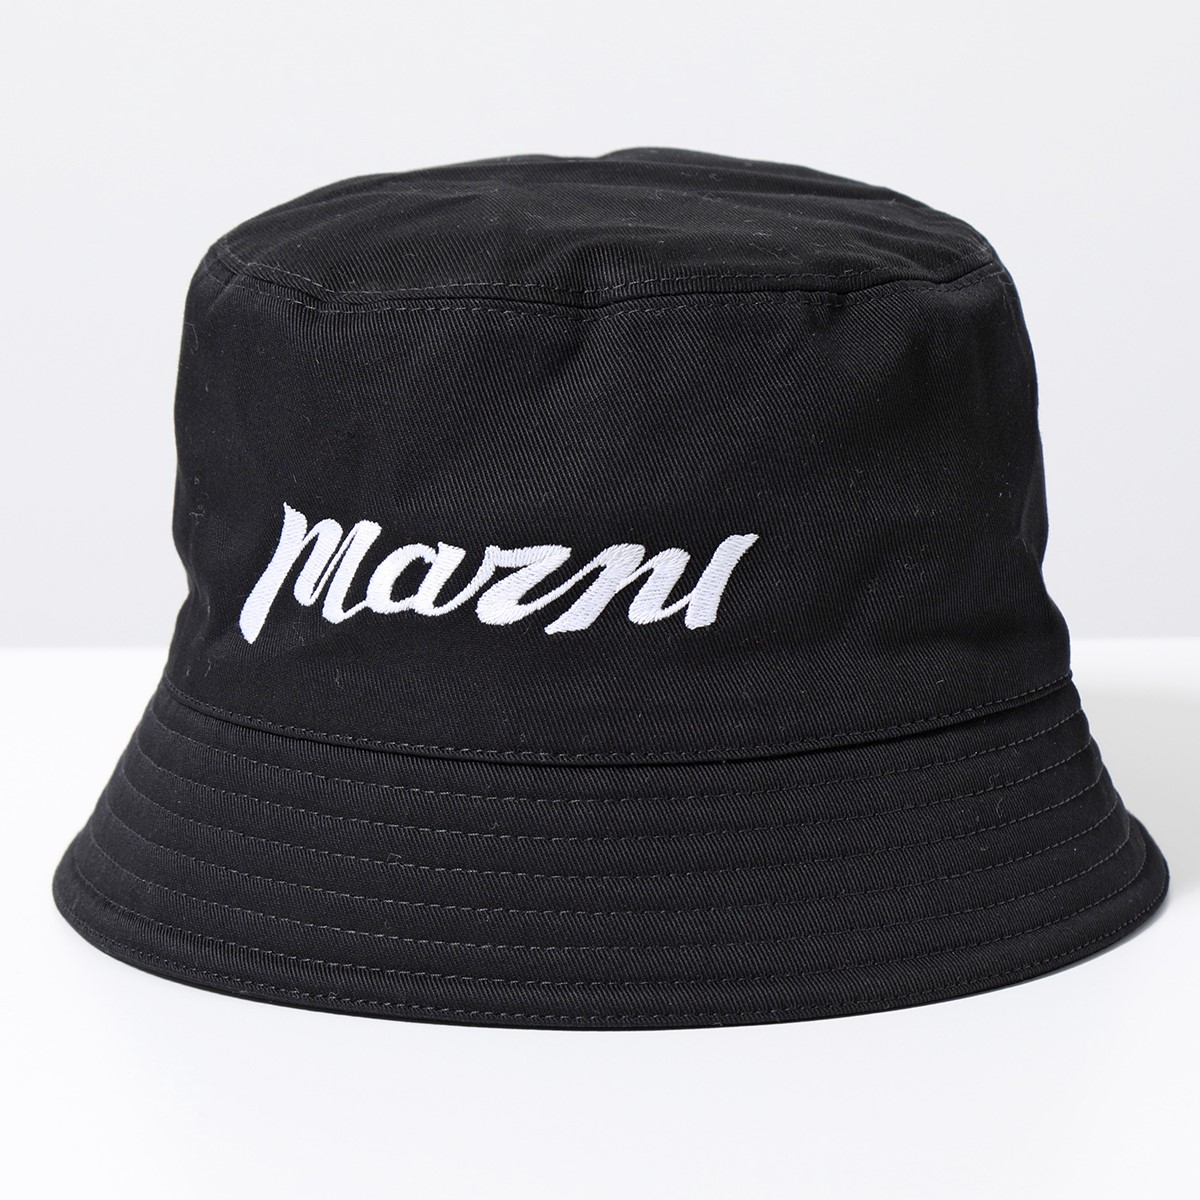 MARNI マルニ バケットハット CLZC0110S0 UAC005 メンズ ロゴ刺繍 コットン 帽子 カラー2色